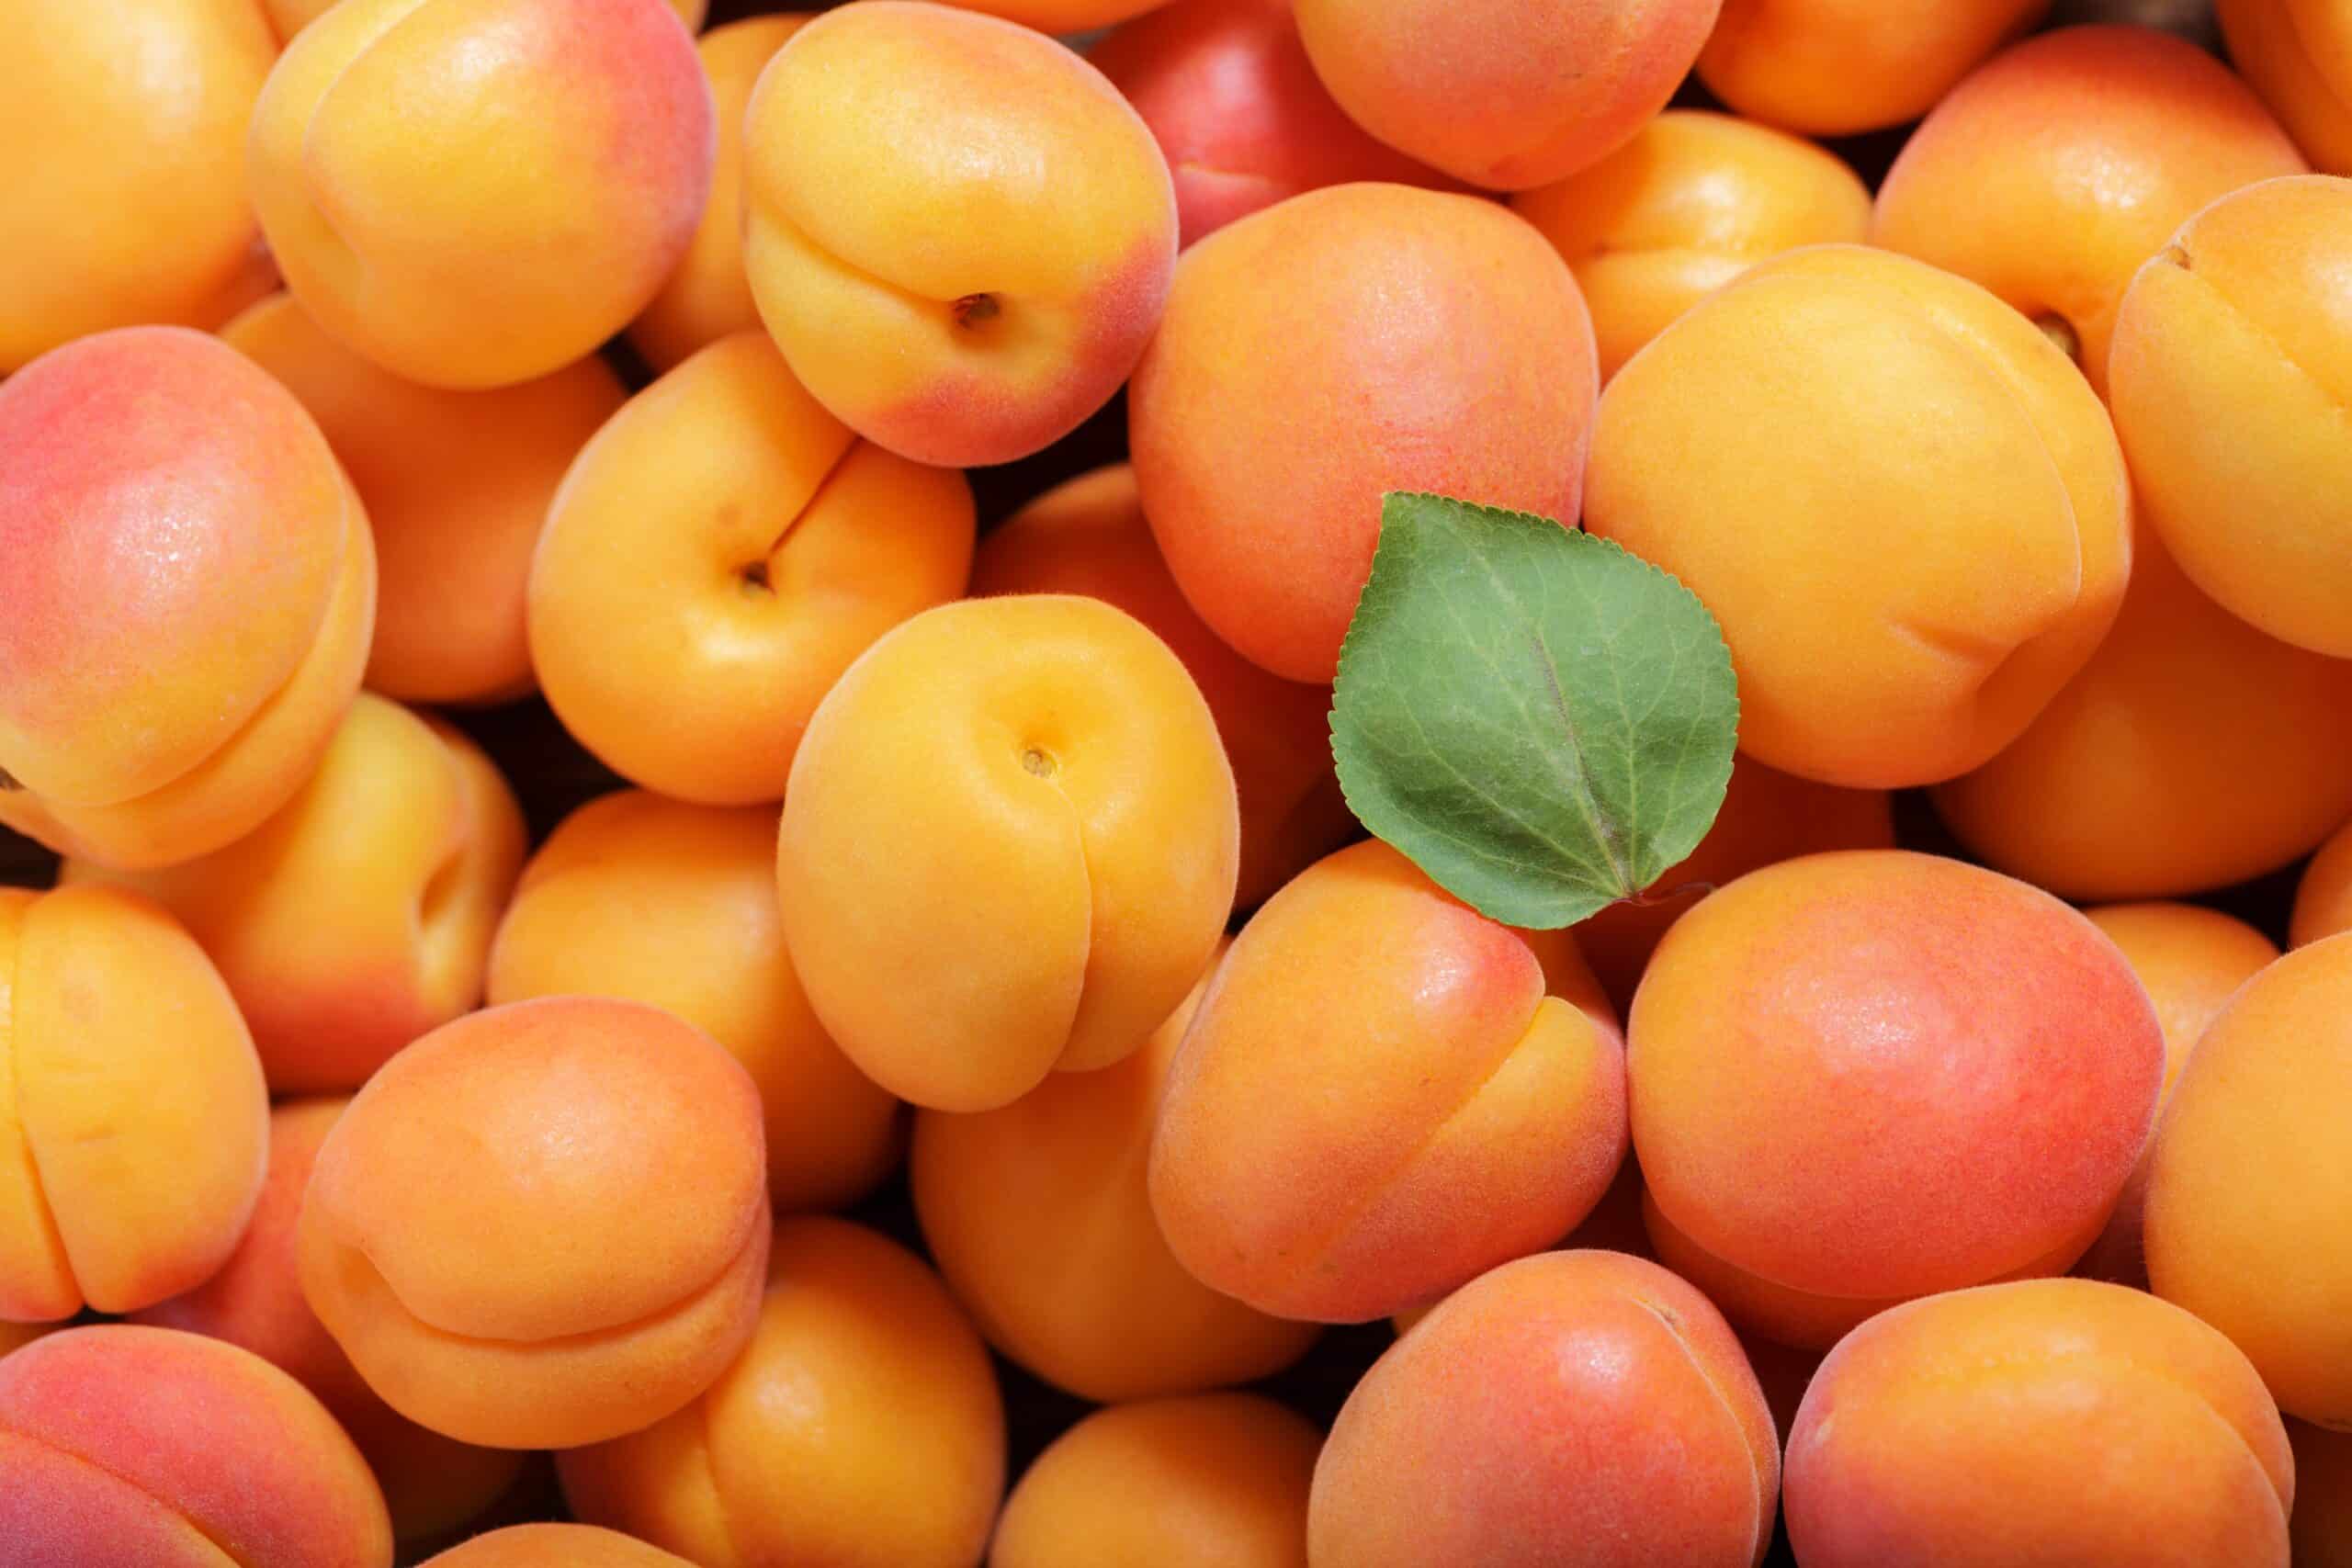  ຢ່າເຮັດຜິດອີກຕໍ່ໄປ! ຄວາມແຕກຕ່າງຕົ້ນຕໍລະຫວ່າງ apricot ແລະ peach